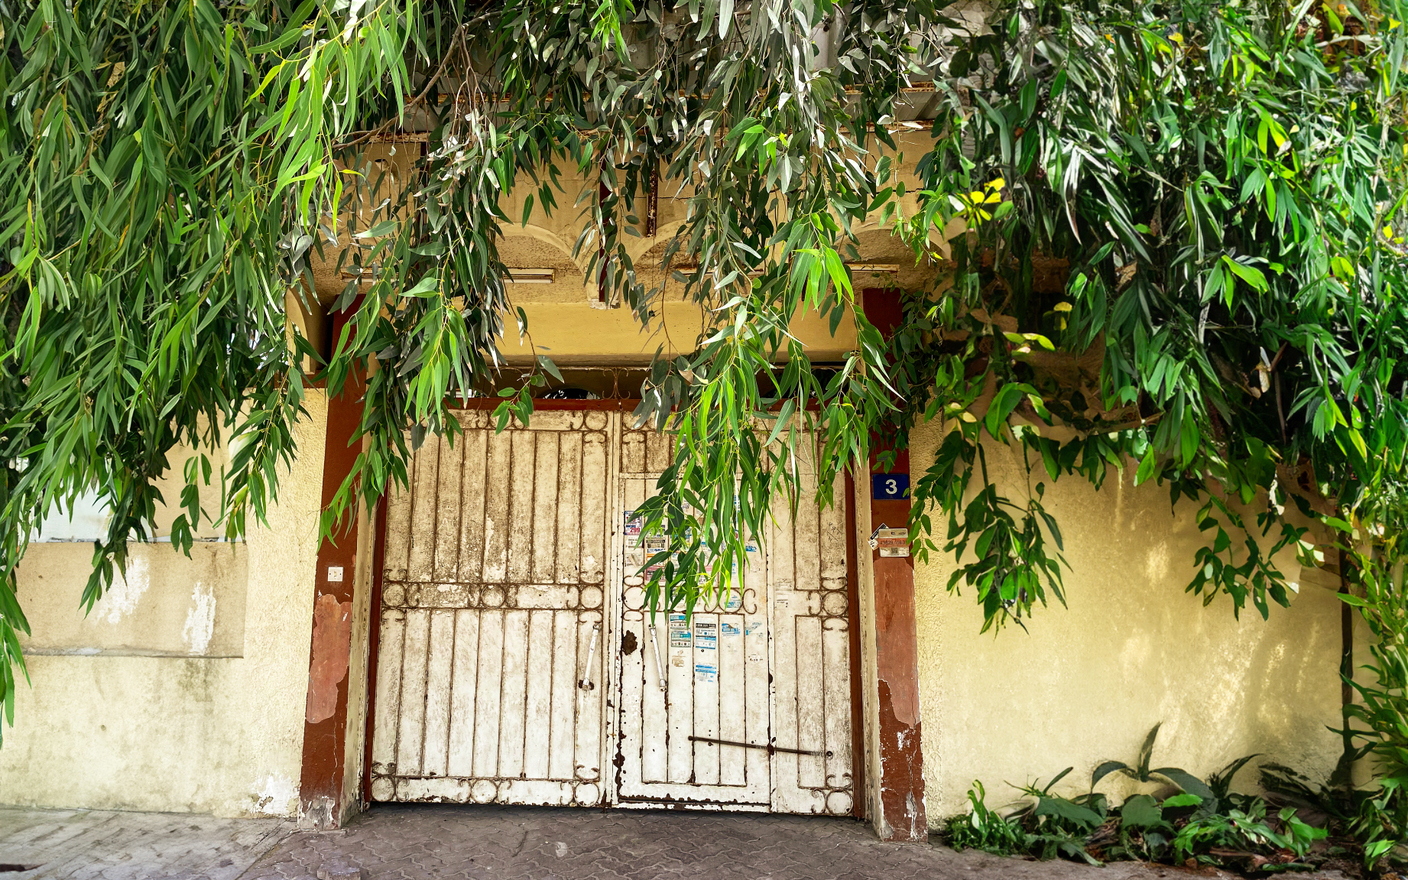 الصورة : أبواب من الحديد والخشب متنوعة الأشكال والألوان| تصوير: أحمد عبيد